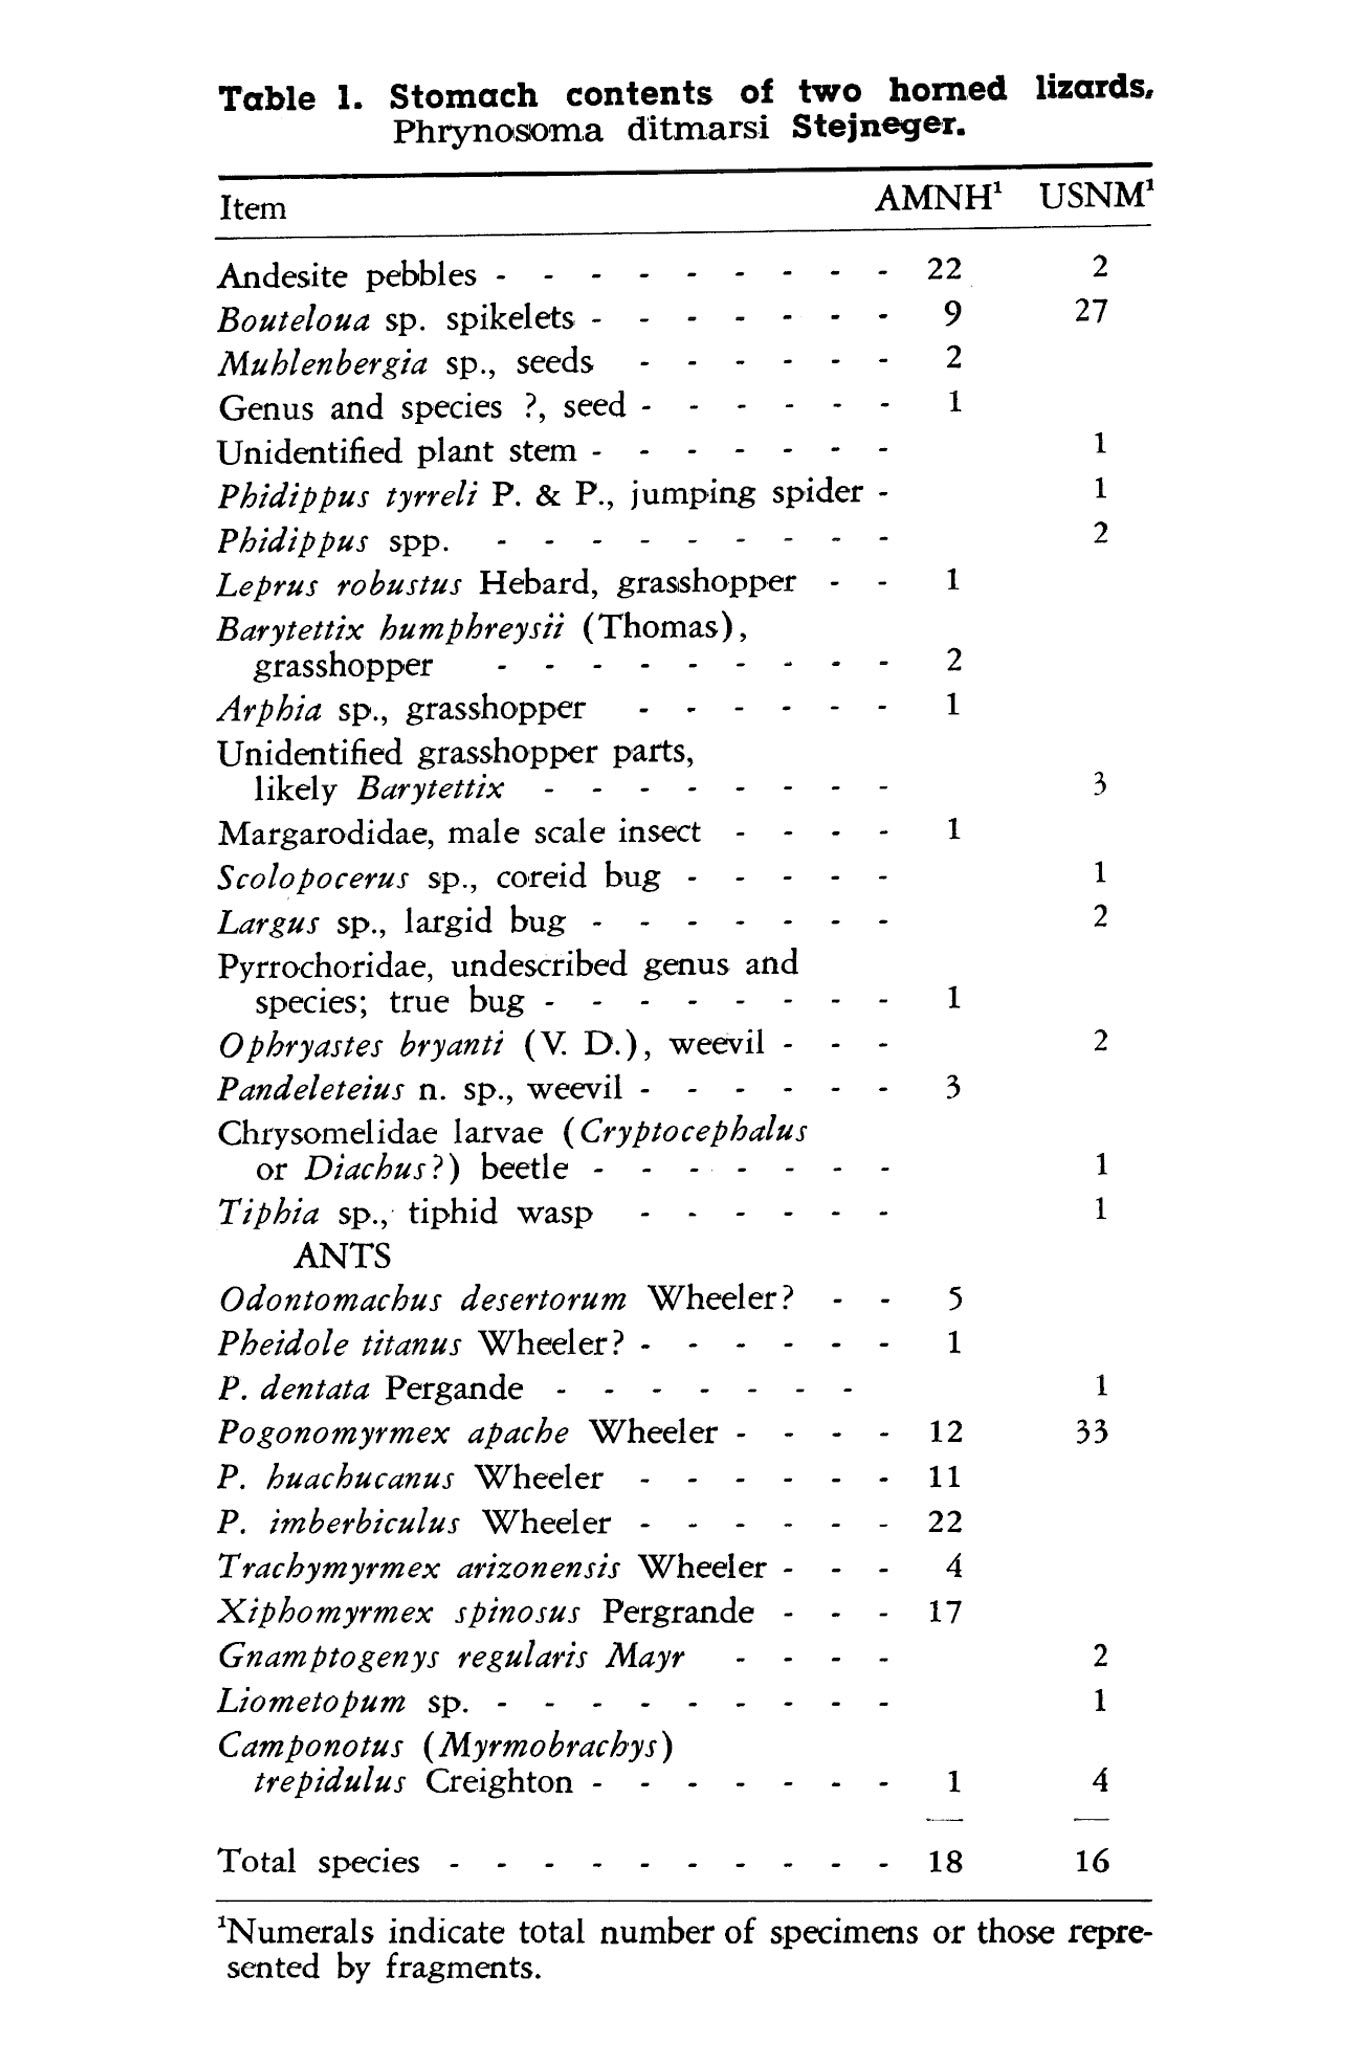 Stomach contents of <em>Phyrnosoma ditmarsi</em>